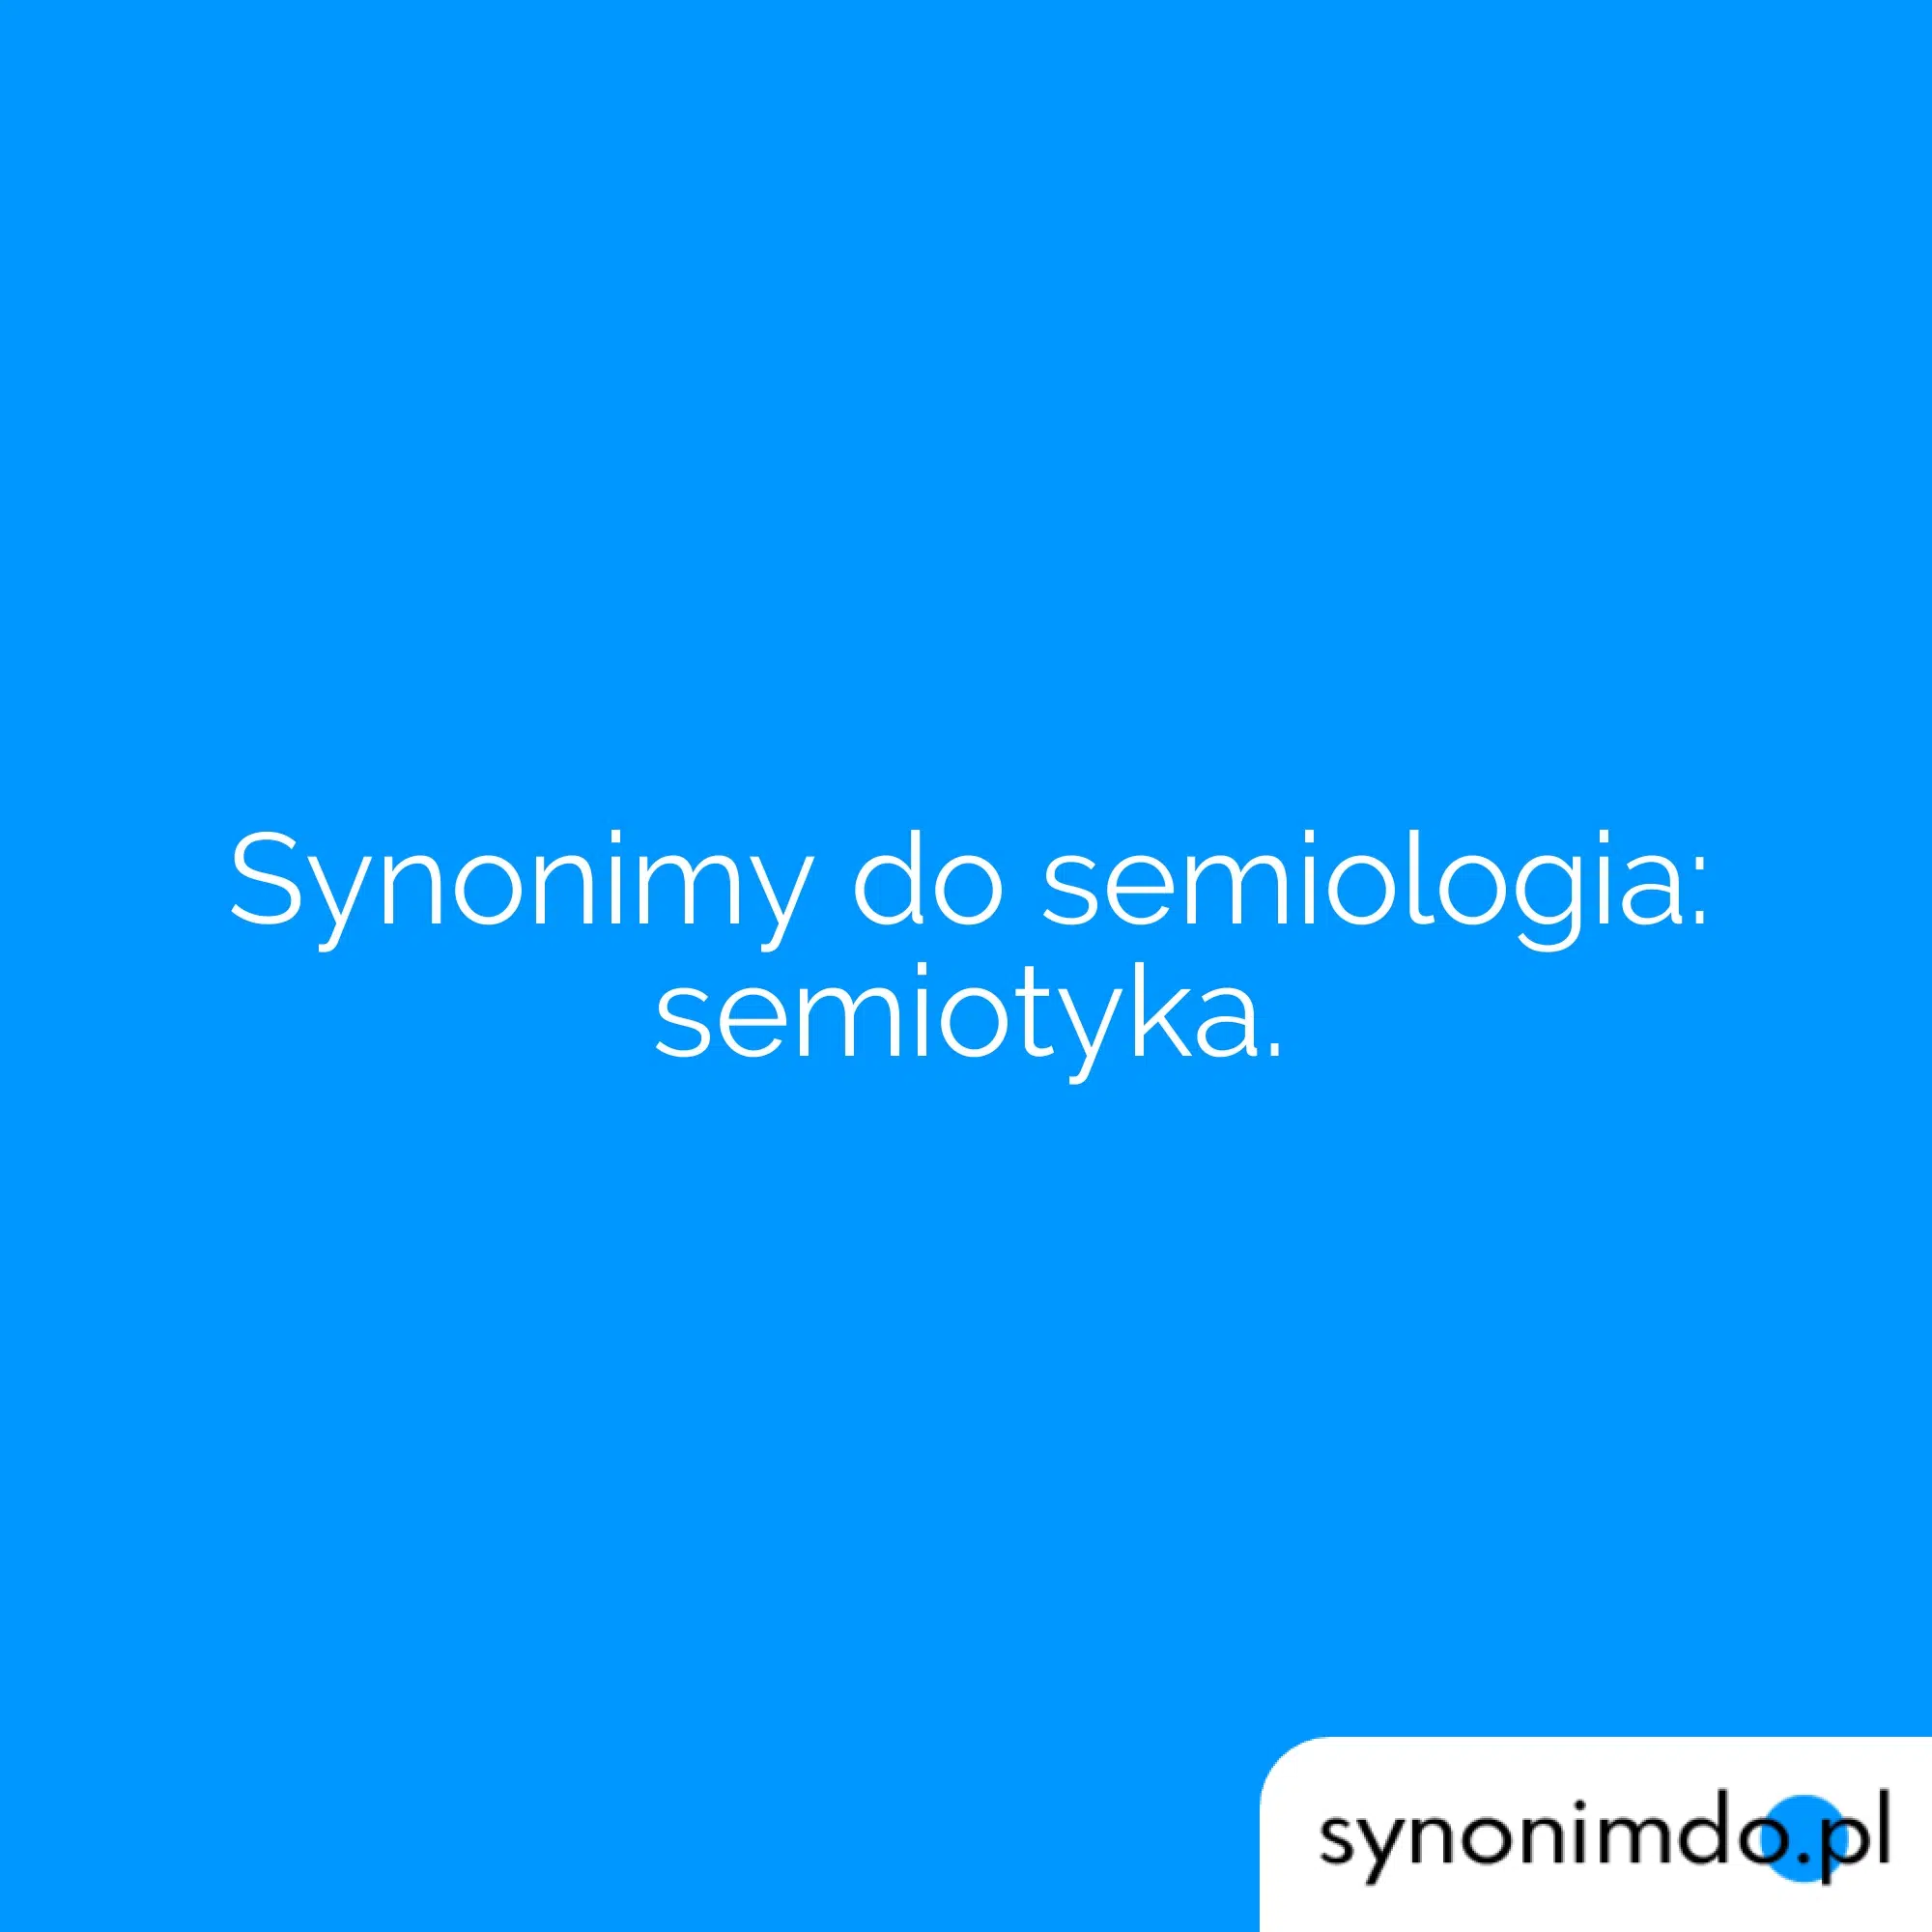 semiologia